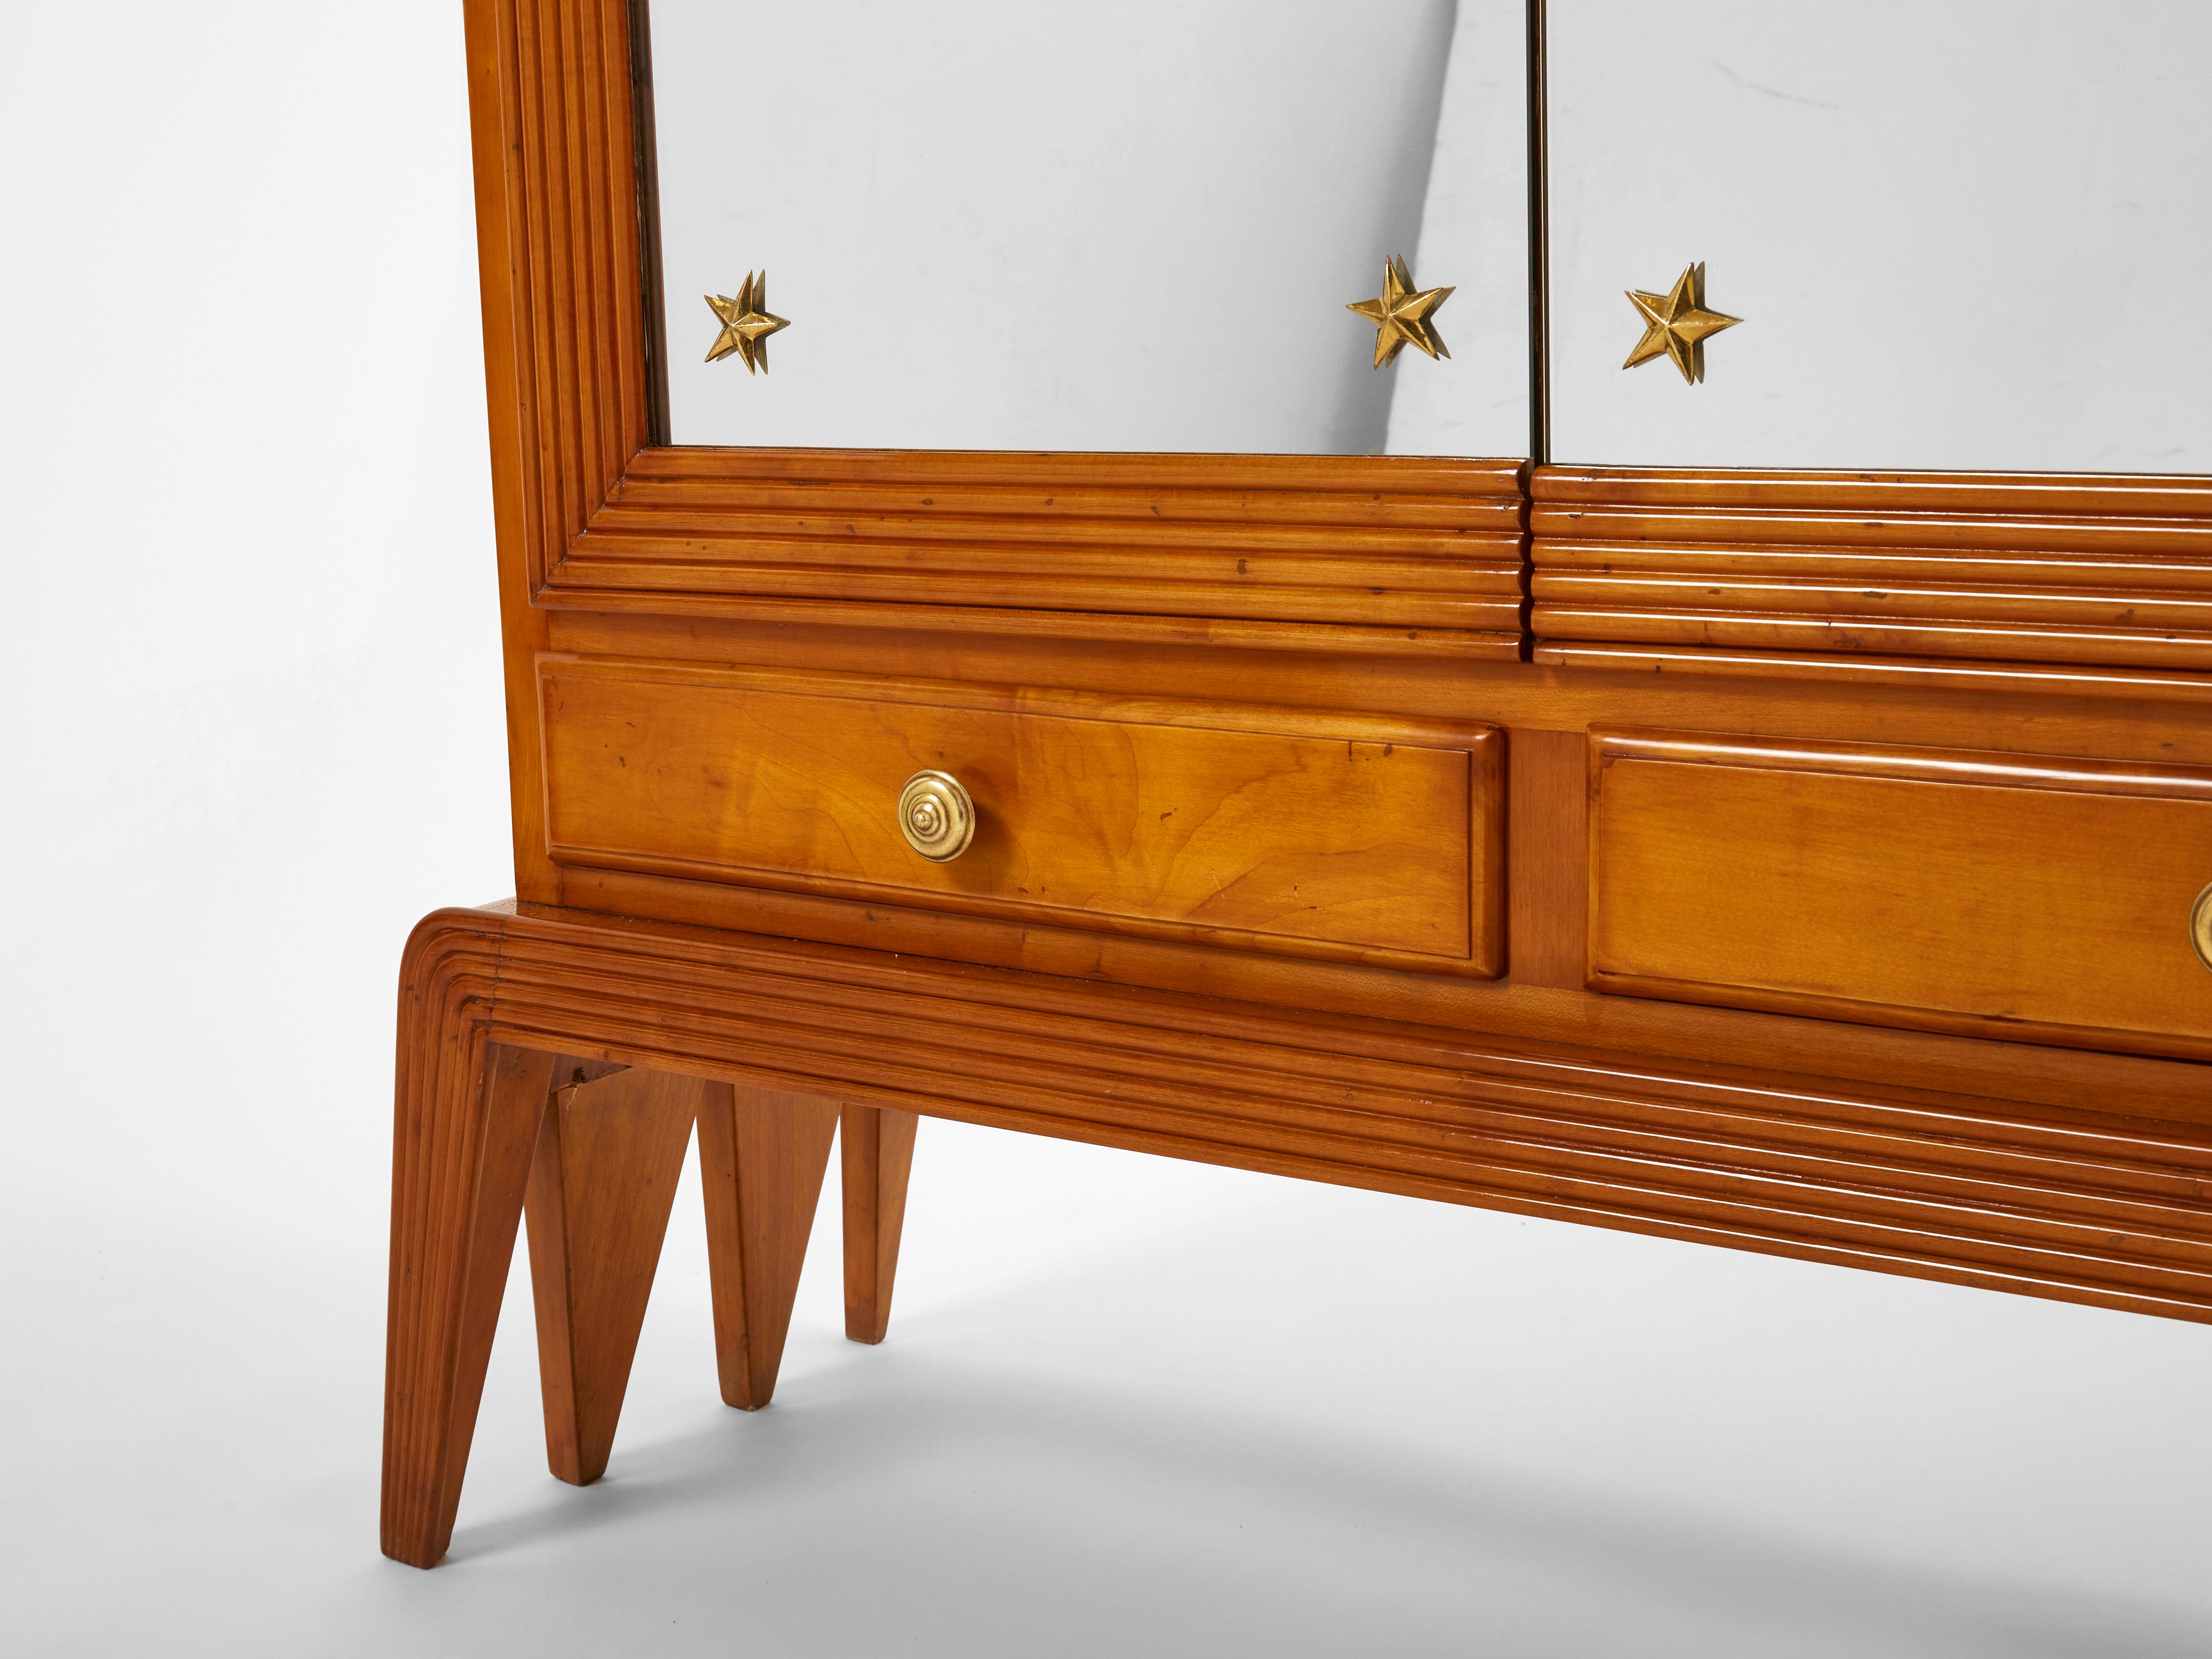 Osvaldo Borsani Cherry Wood Mirrored Bar Cabinet for Abv, 1940 For Sale 2